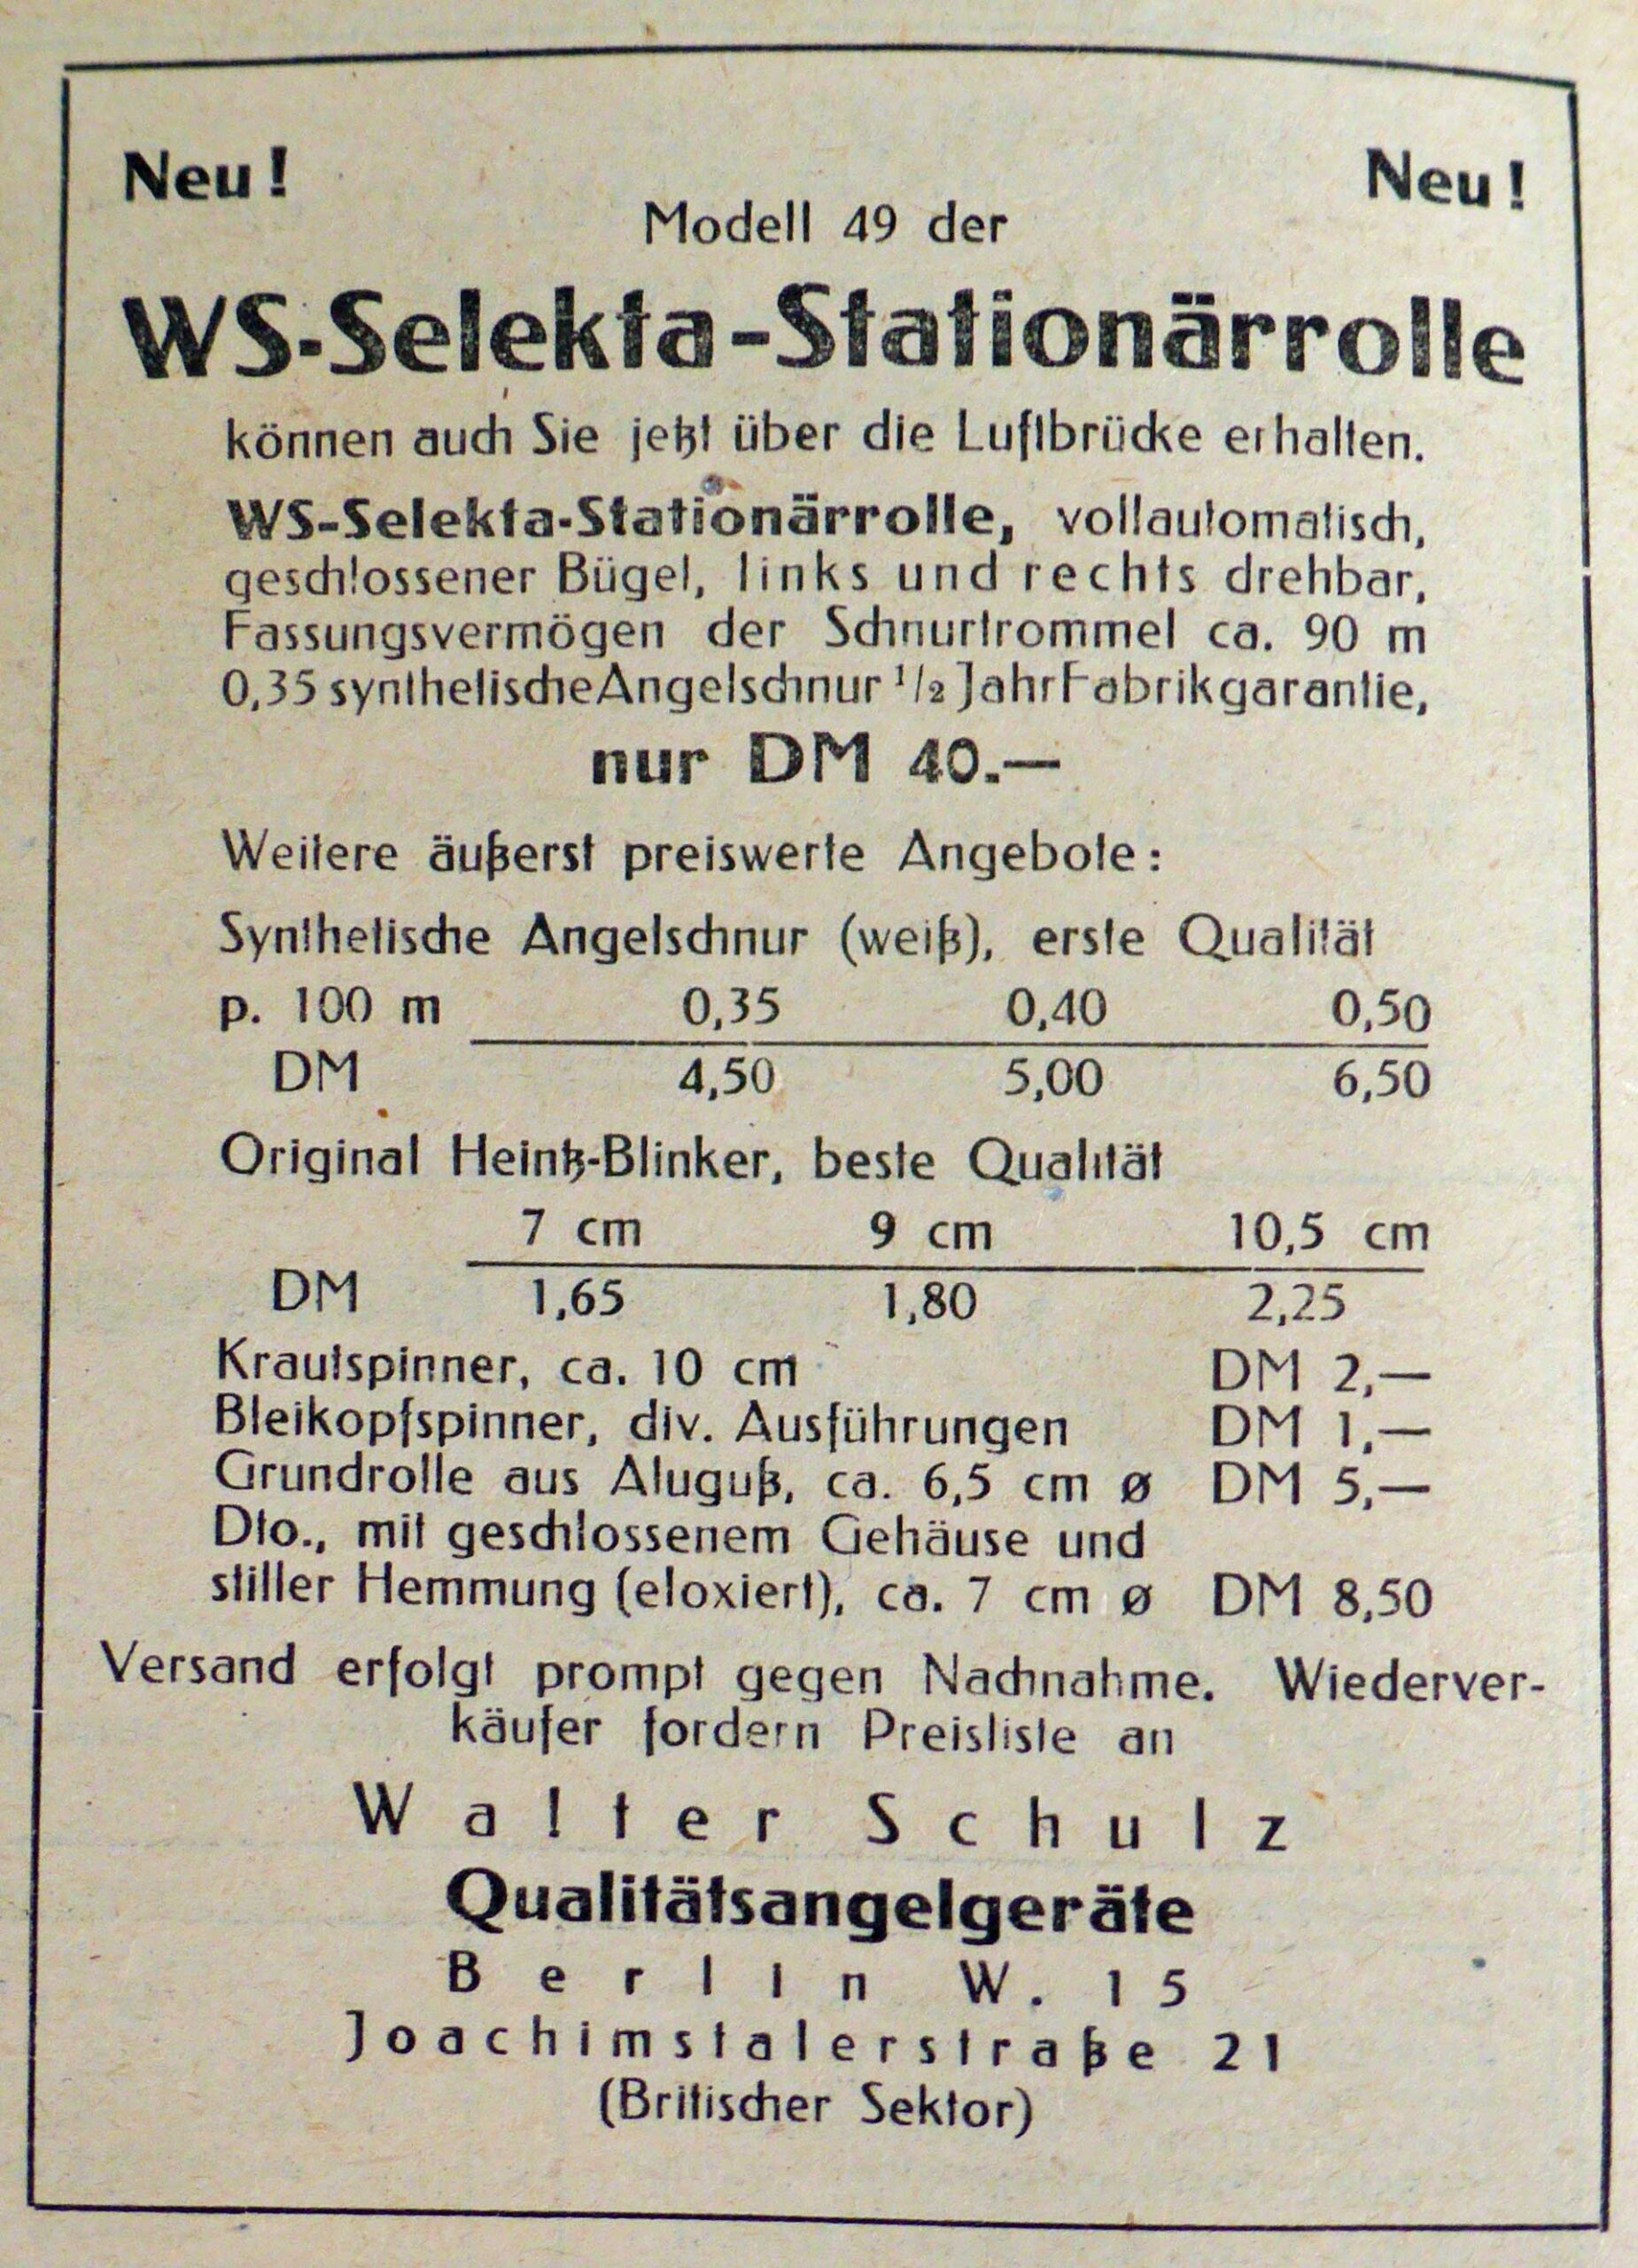 Werbung für die WS-Selekta-Grundrollen aus der Fischwaid, Mai 1949. Hier wird ein kleines silbernes Modell und ein minimal größeres eloxiertes Modell beschrieben.